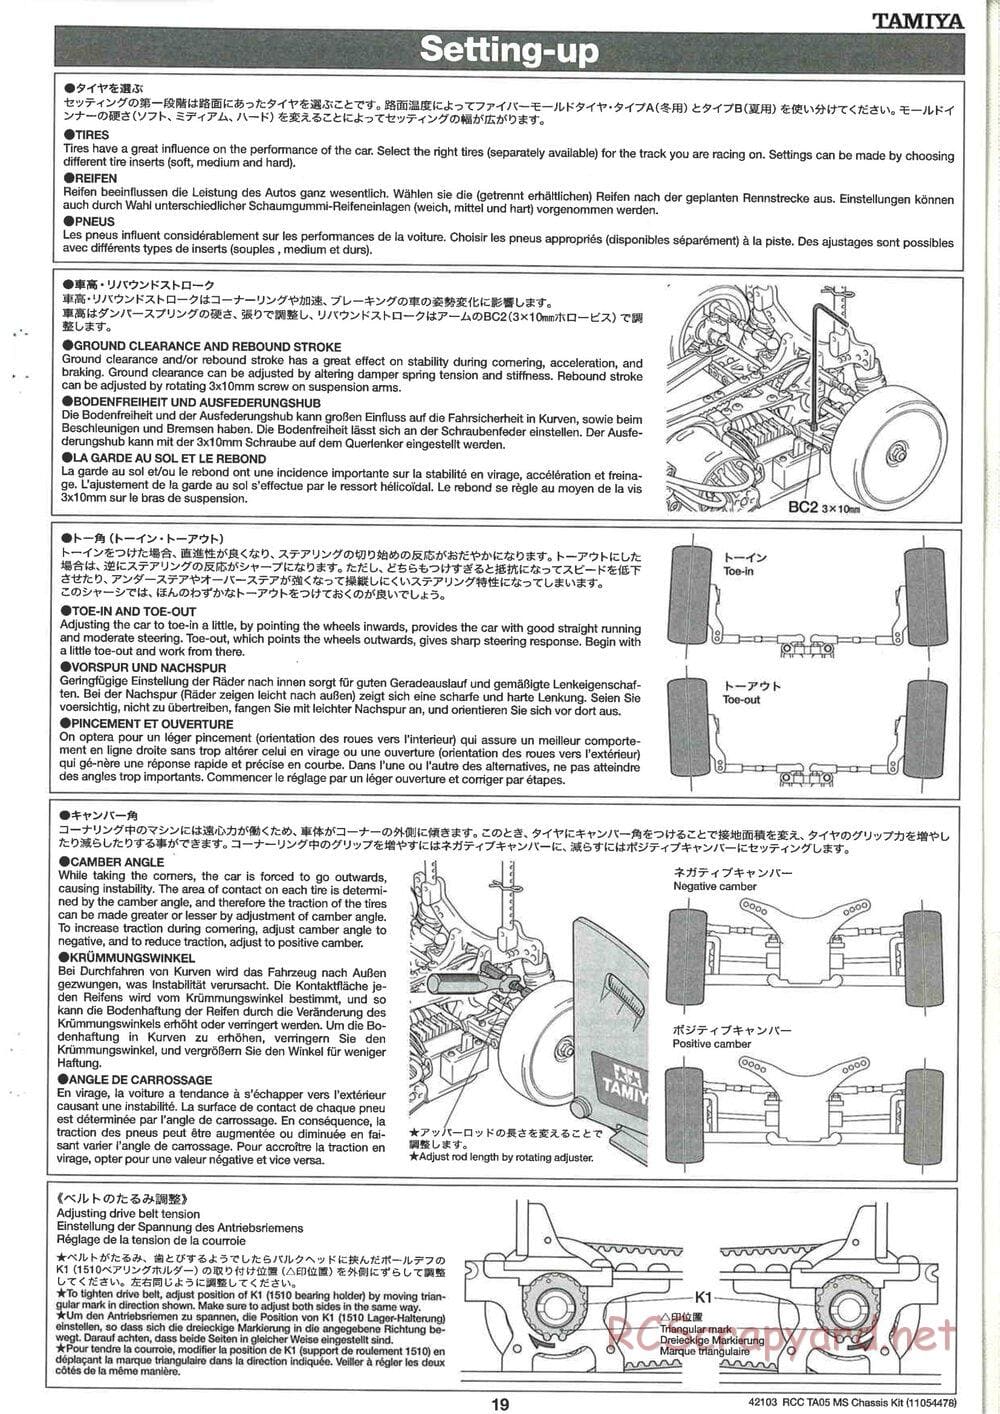 Tamiya - TA05 MS Chassis - Manual - Page 19